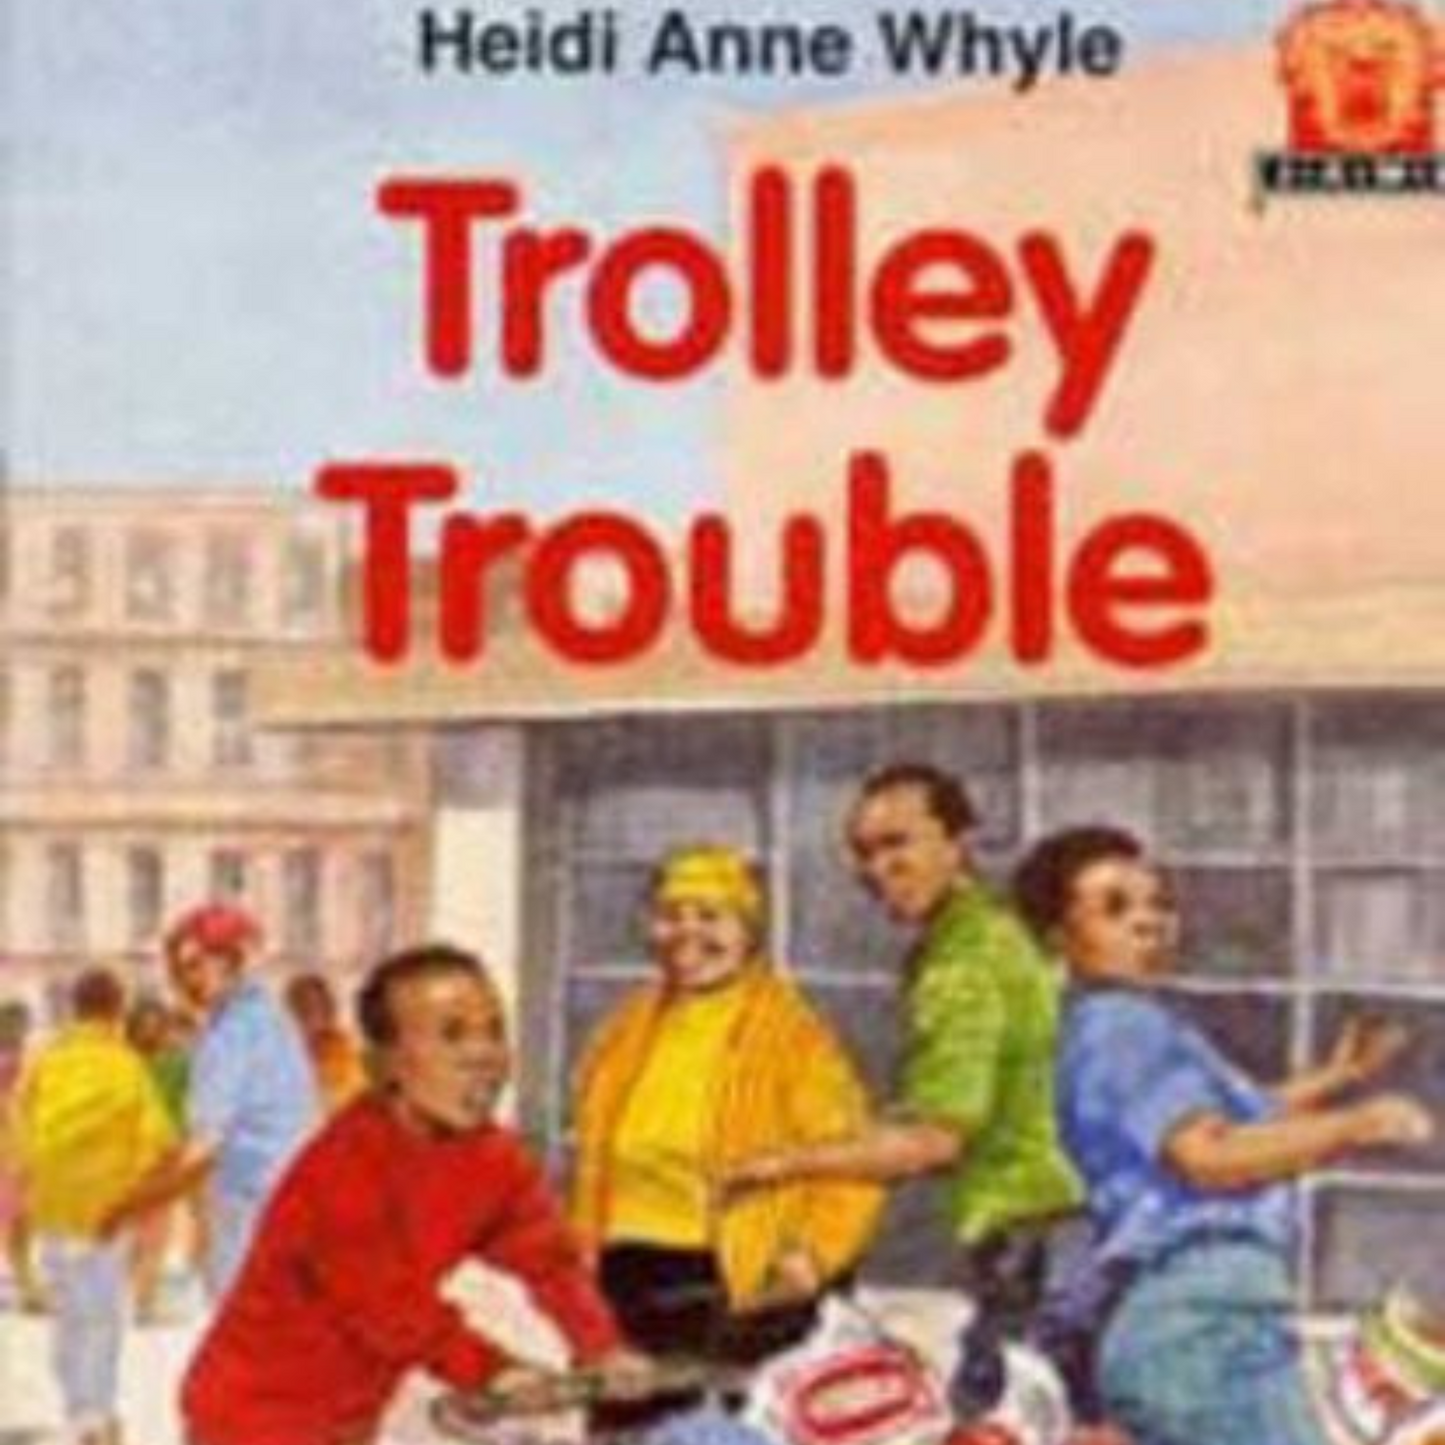 Trolley Trouble